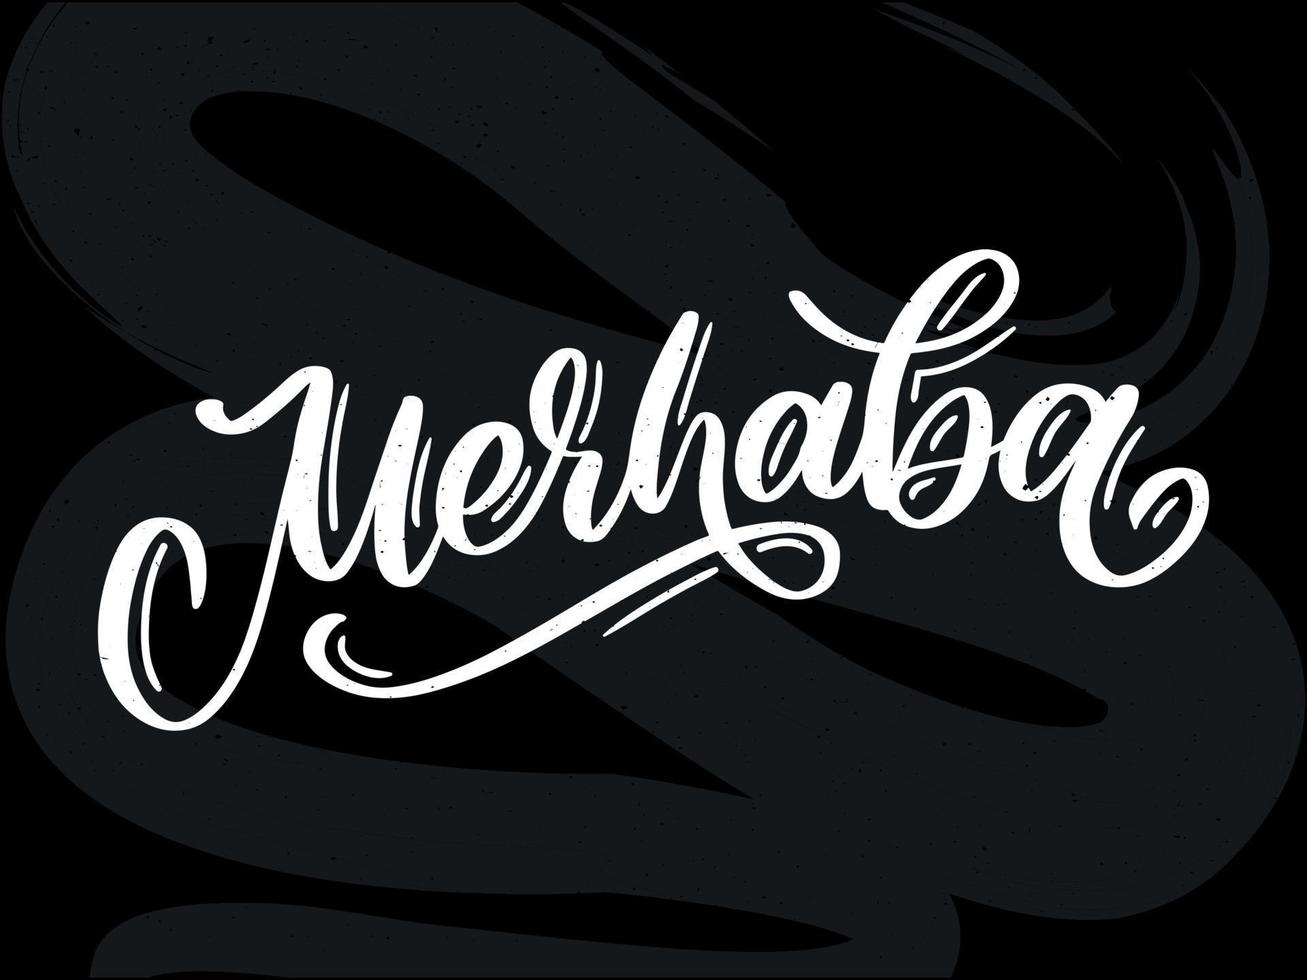 merhaba calligrafia vettoriale nera disegnata a mano isolata su sfondo bianco. merhaba - parola turca che significa ciao